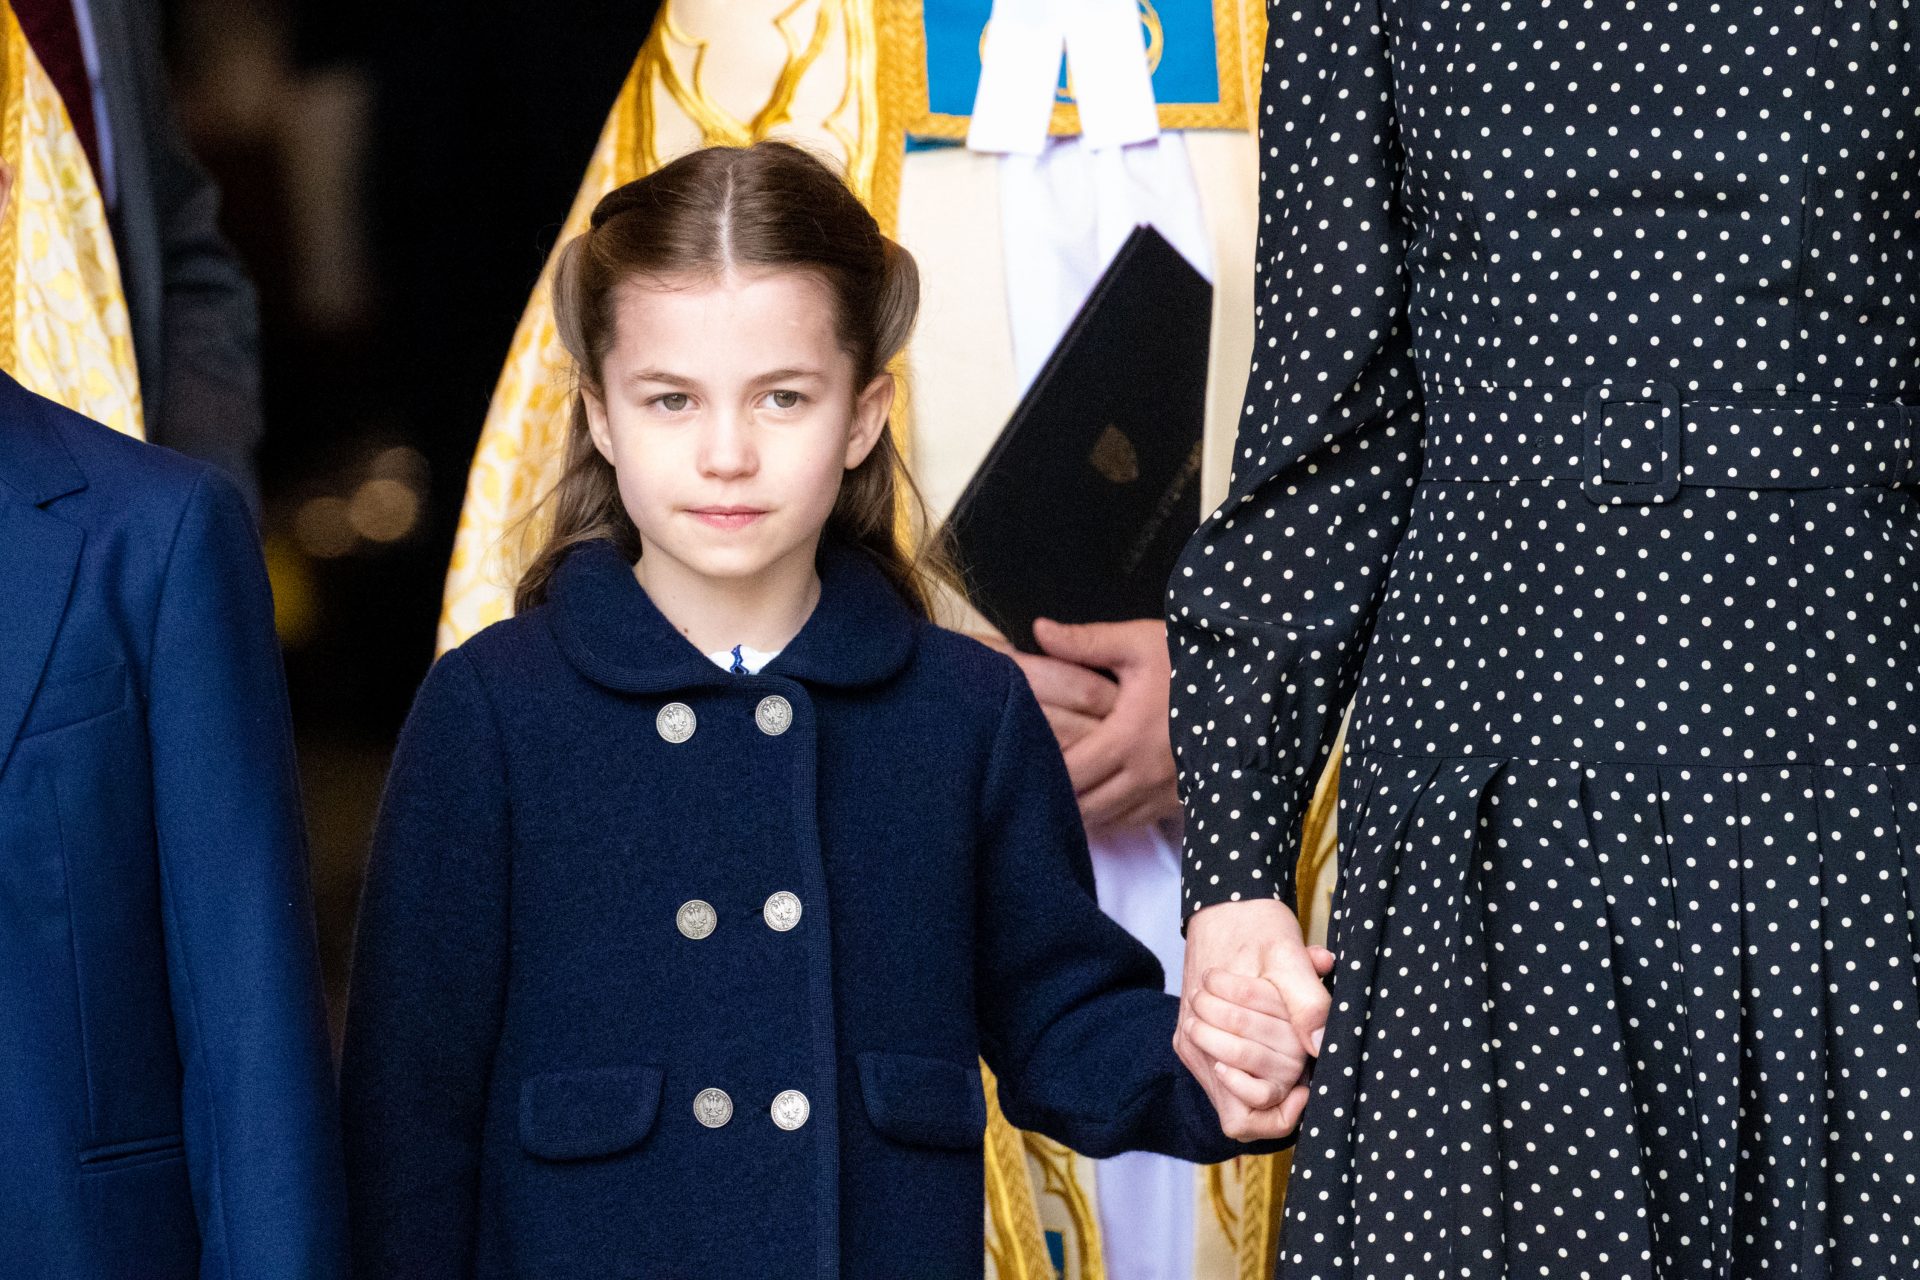 <p>Aunque mucho más joven que el resto, Carlota de Cambridge es una seria candidata al título de la princesa europea más encantadora. Es bisnieta de la reina Isabel II y nació en 2015. A pesar de su corta edad, Charlotte ya ha acompañado a sus padres, el príncipe Guillermo y Kate Middleton, en algunos viajes oficiales fuera del Reino Unido. Y ha superado el reto con nota.</p> <p><strong> <a href="https://www.msn.com/es-es/channel/source/Showbizz%20Daily%20Spain/sr-vid-iriwqyrmyu3943qxunsxawb6up84fnsgtjw4ygh2b6p8qp8s5m4s?cvid=5799eb89505d4aea94912e396d5e282c&ei=13" rel="noopener">Síguenos y descubre cada día contenidos que te interesan</a></strong></p>